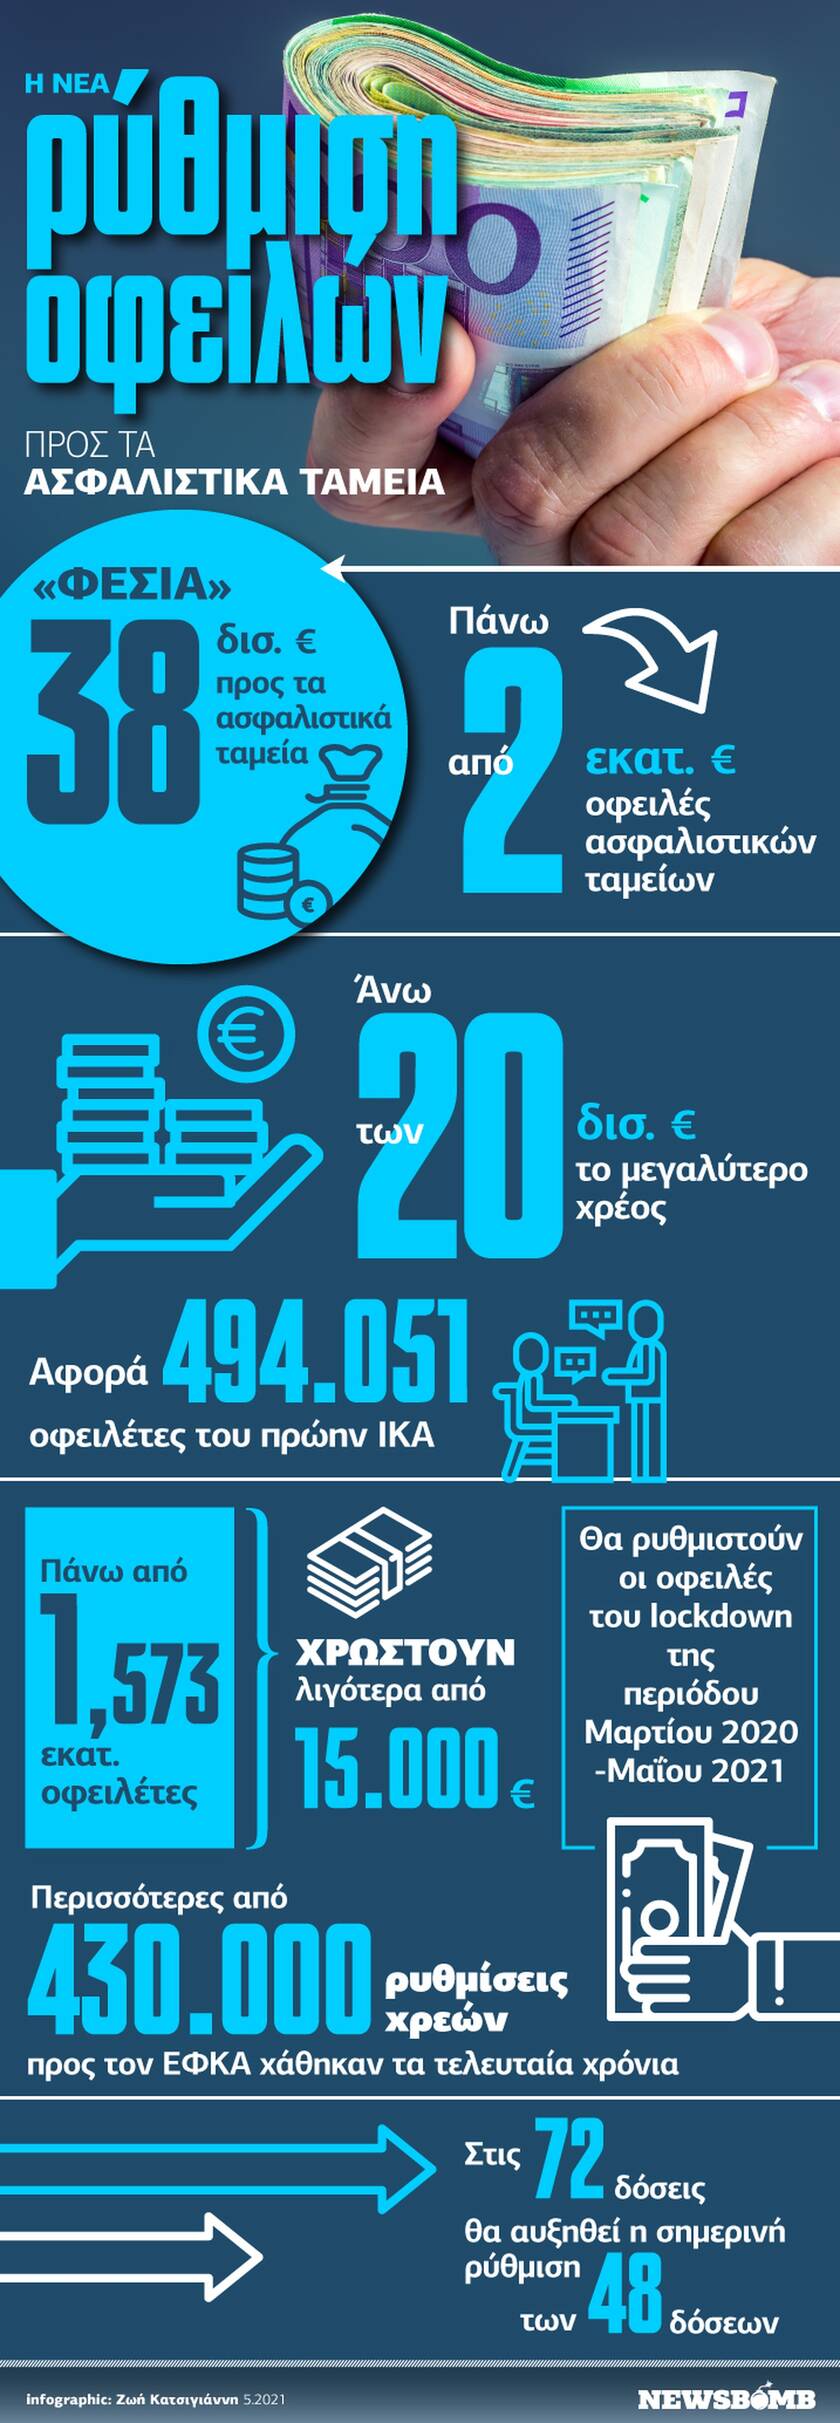 Η νέα ρύθμιση οφειλών προς τα ασφαλιστικά ταμεία - Όλα τα δεδομένα στο Infographic του Newsbomb.gr